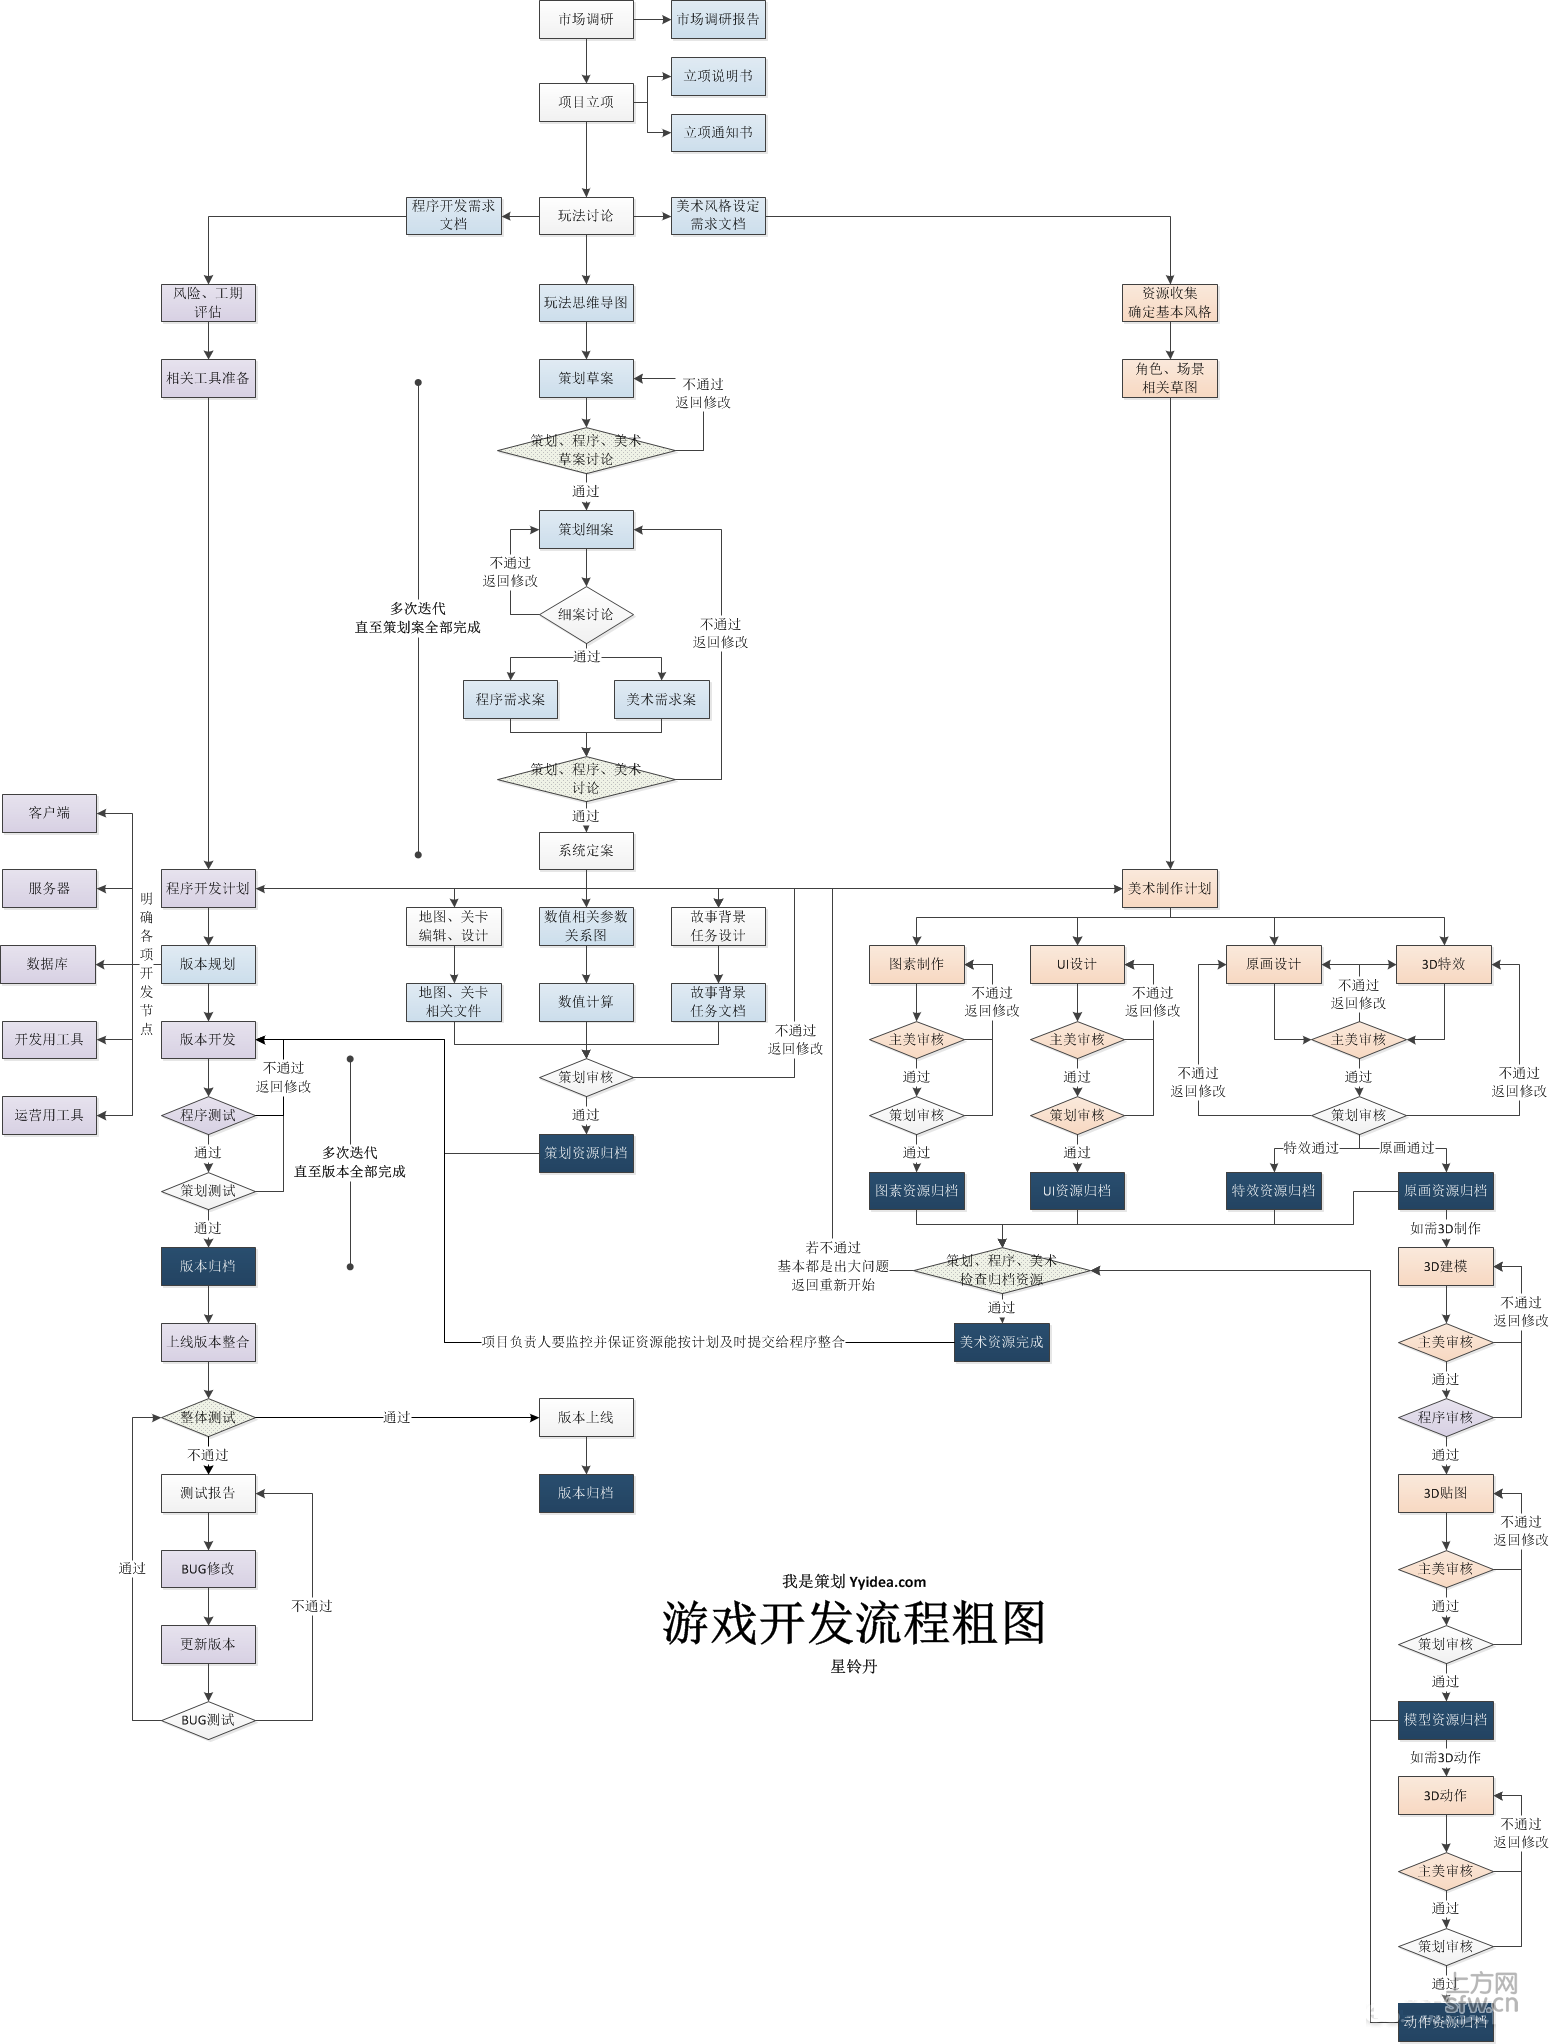 游戏开发流程-树根图 -- 上方网(www.sfw.cn)